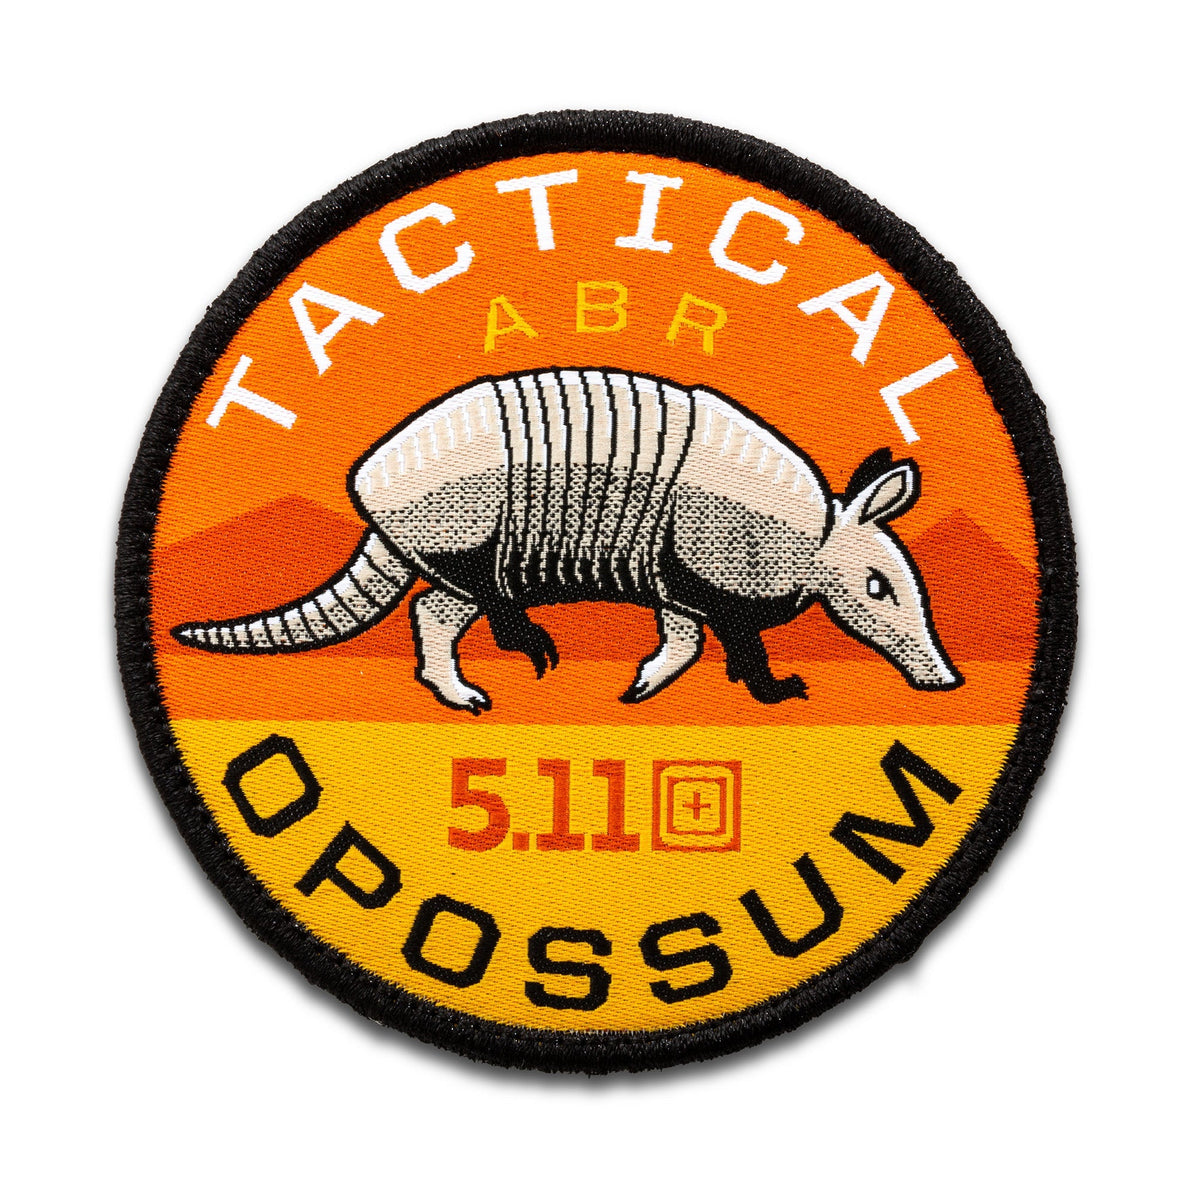 5.11 Tactical Opossum Patch Accessories 5.11 Tactical Tactical Gear Supplier Tactical Distributors Australia